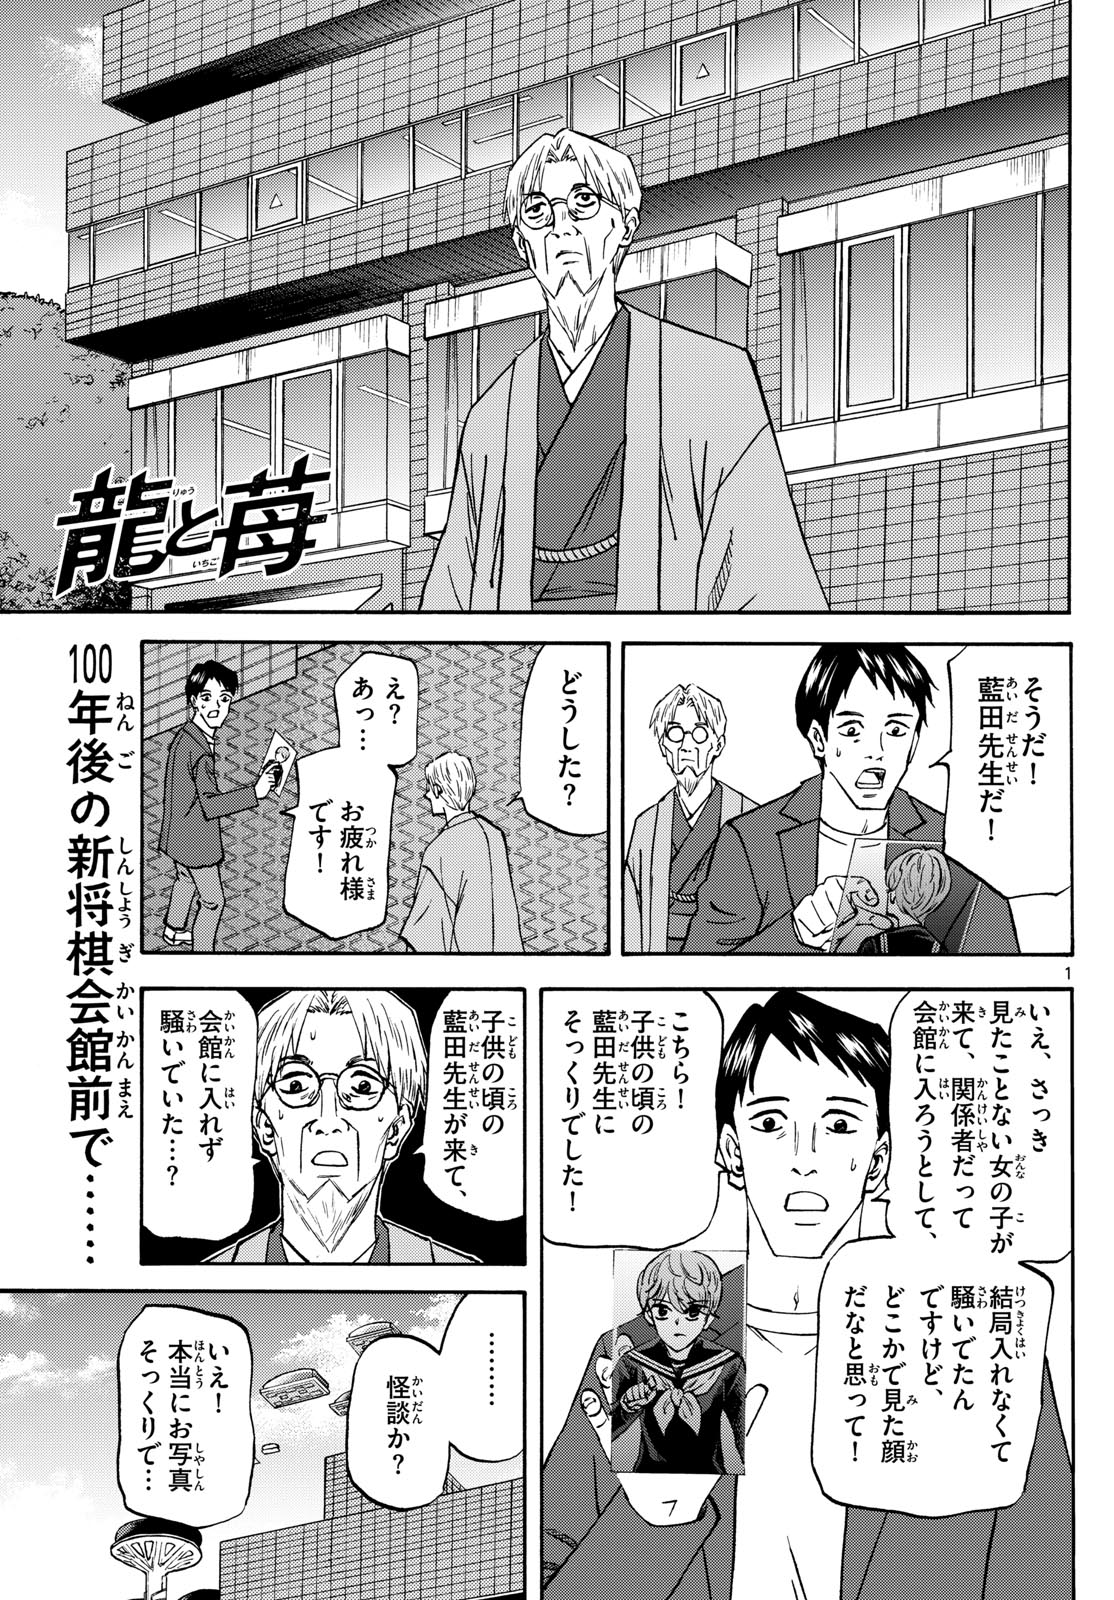 Tatsu to Ichigo - Chapter 183 - Page 1